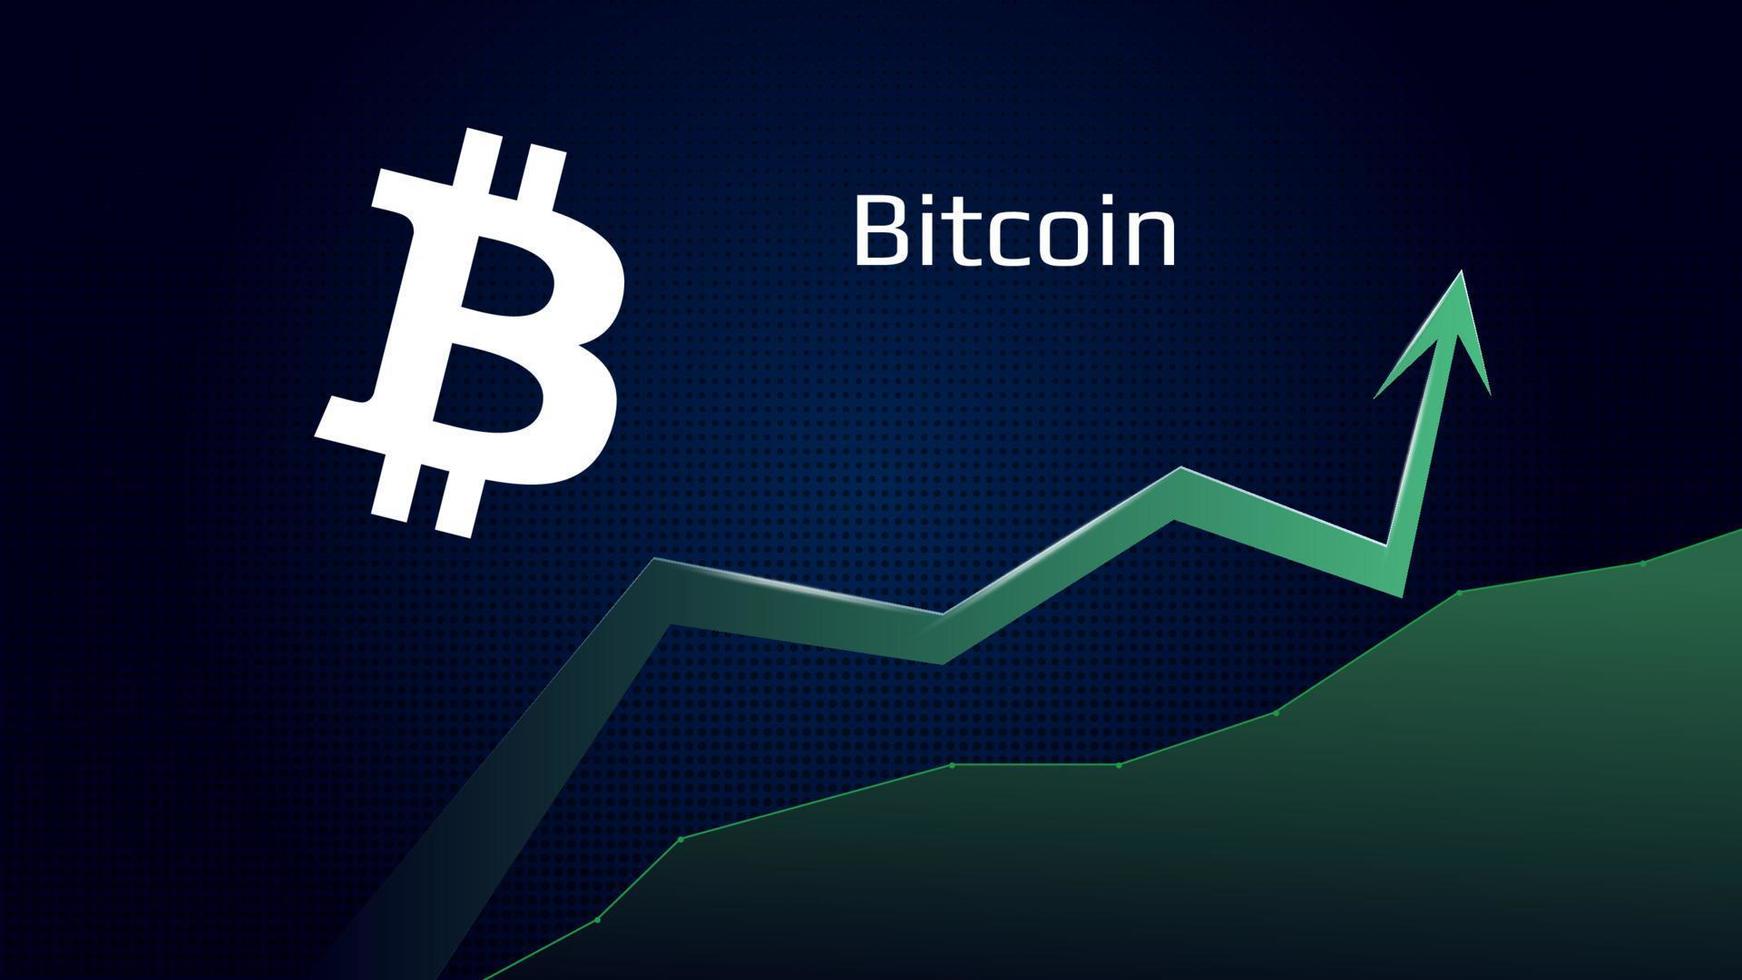 bitcoin btc en tendencia alcista y precio es creciente. cripto moneda símbolo y verde arriba flecha. uniswap moscas a el Luna. vector ilustración.